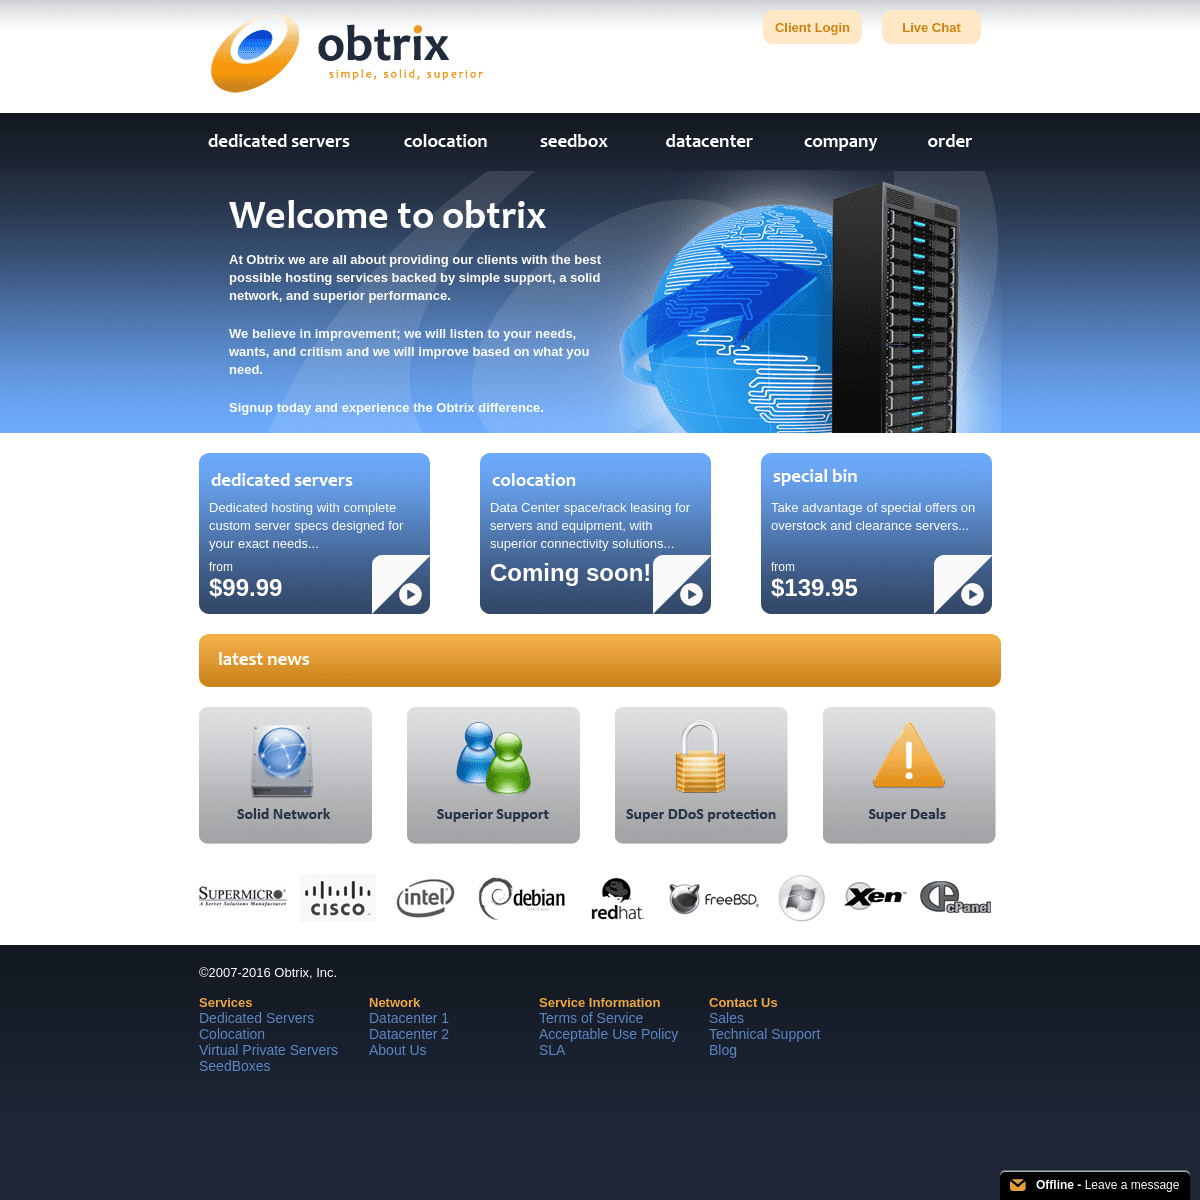 A complete backup of obtrix.net